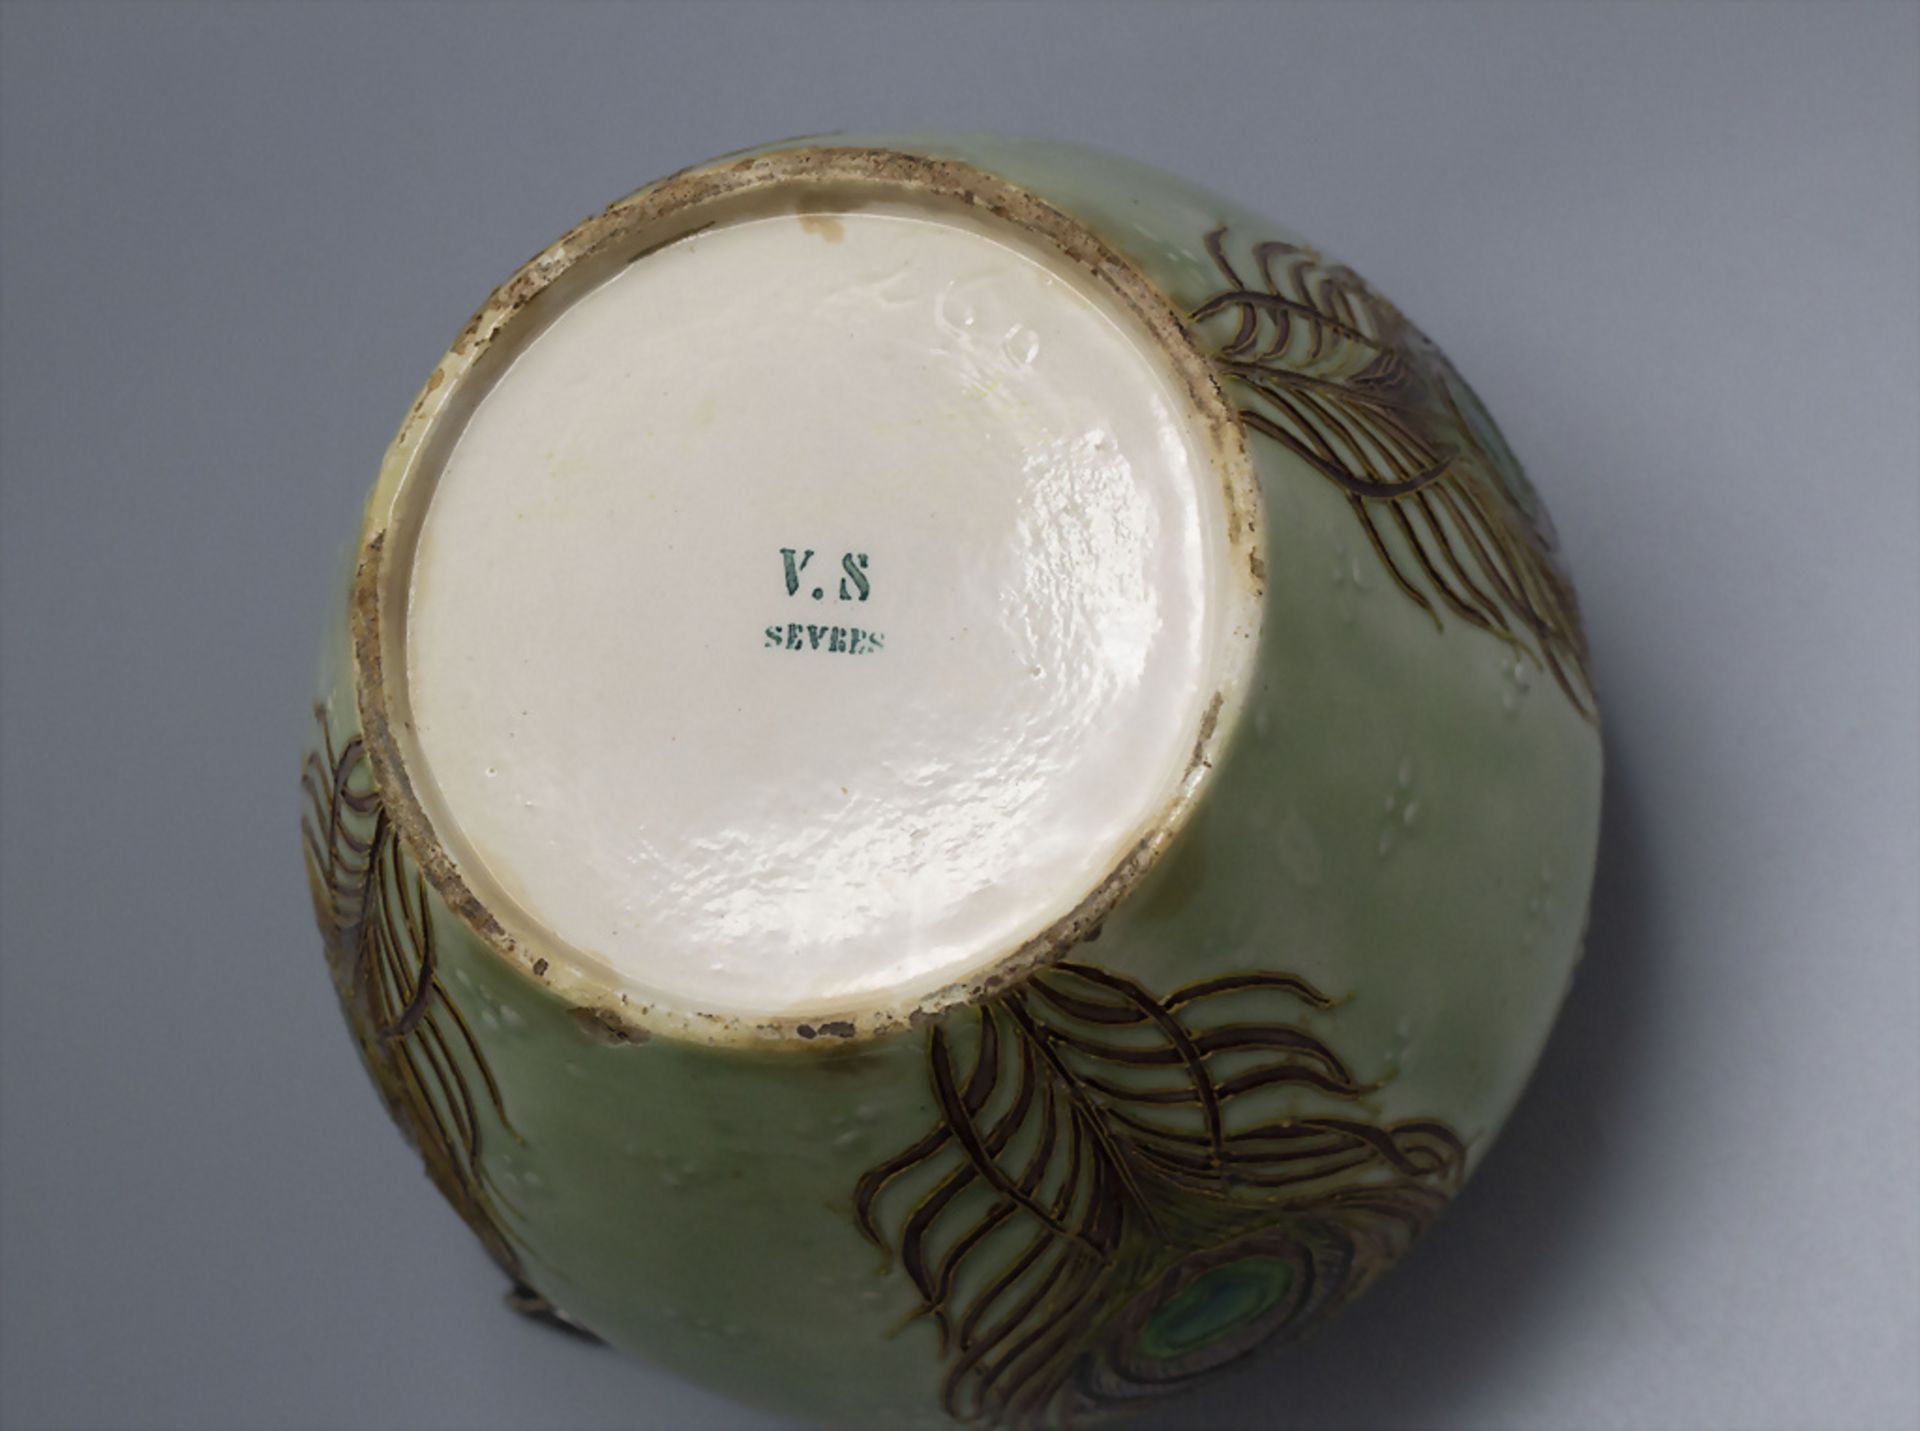 Jugendstil Keksdose mit Silbermontur und Pfauenfedern / An Art Nouveau stoneware biscuit jar ... - Bild 4 aus 5